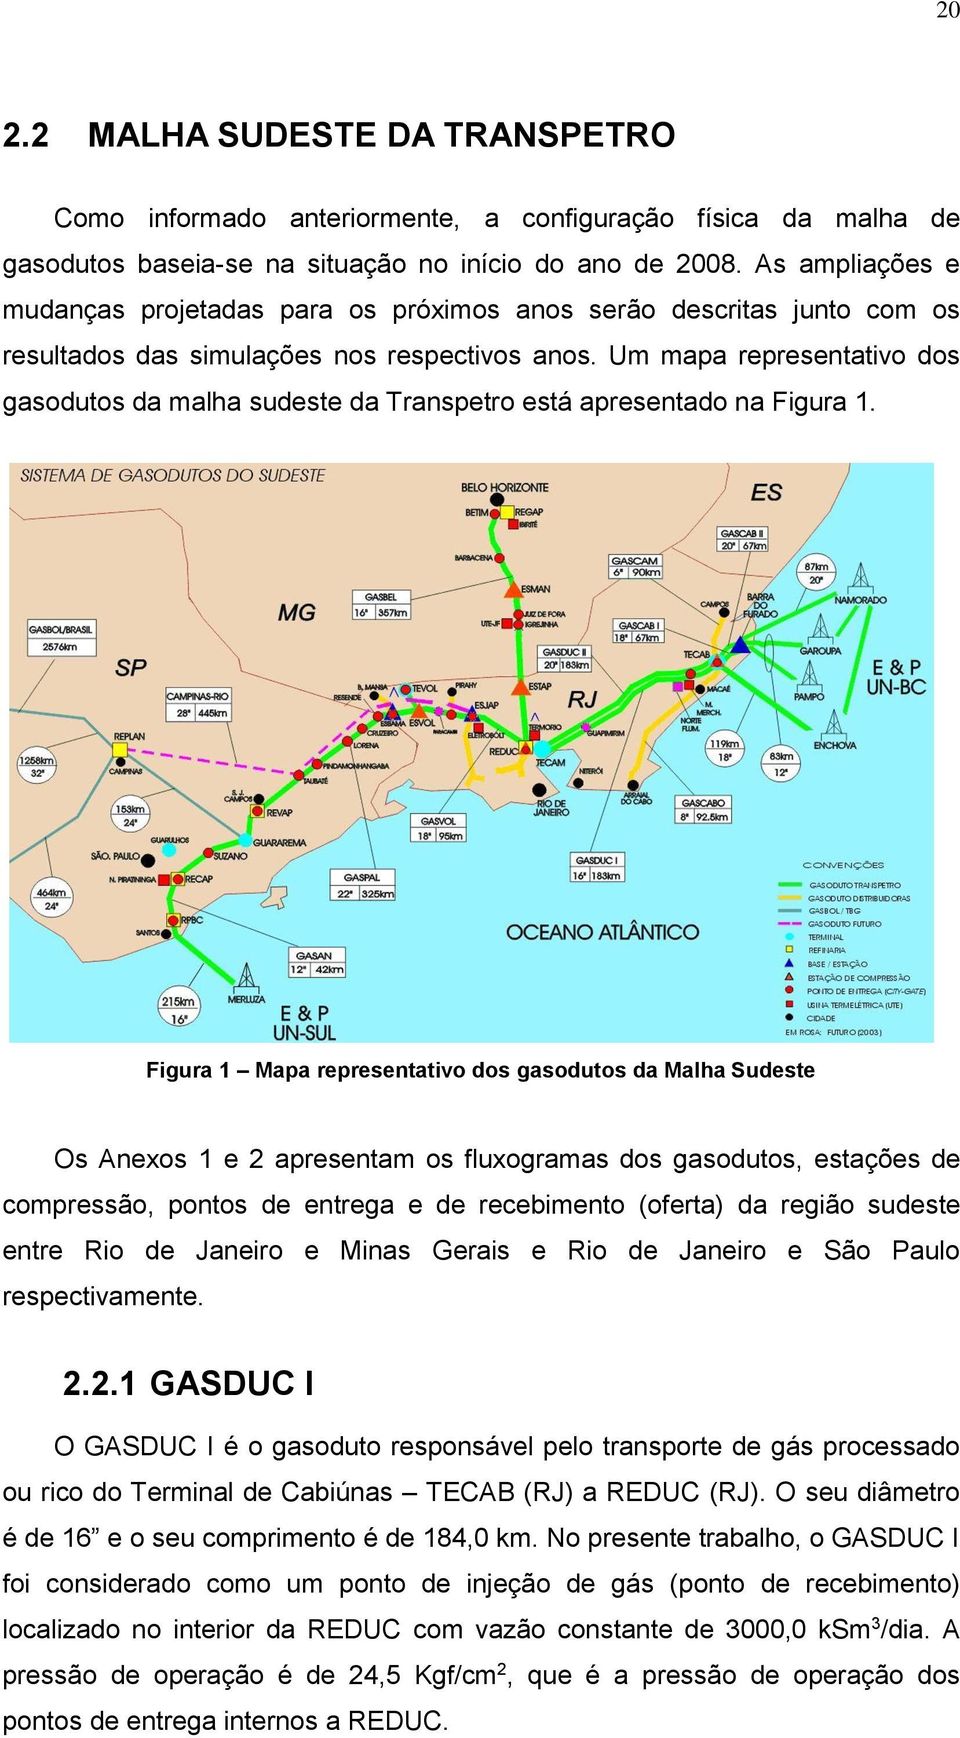 Um mapa representativo dos gasodutos da malha sudeste da Transpetro está apresentado na Figura 1.